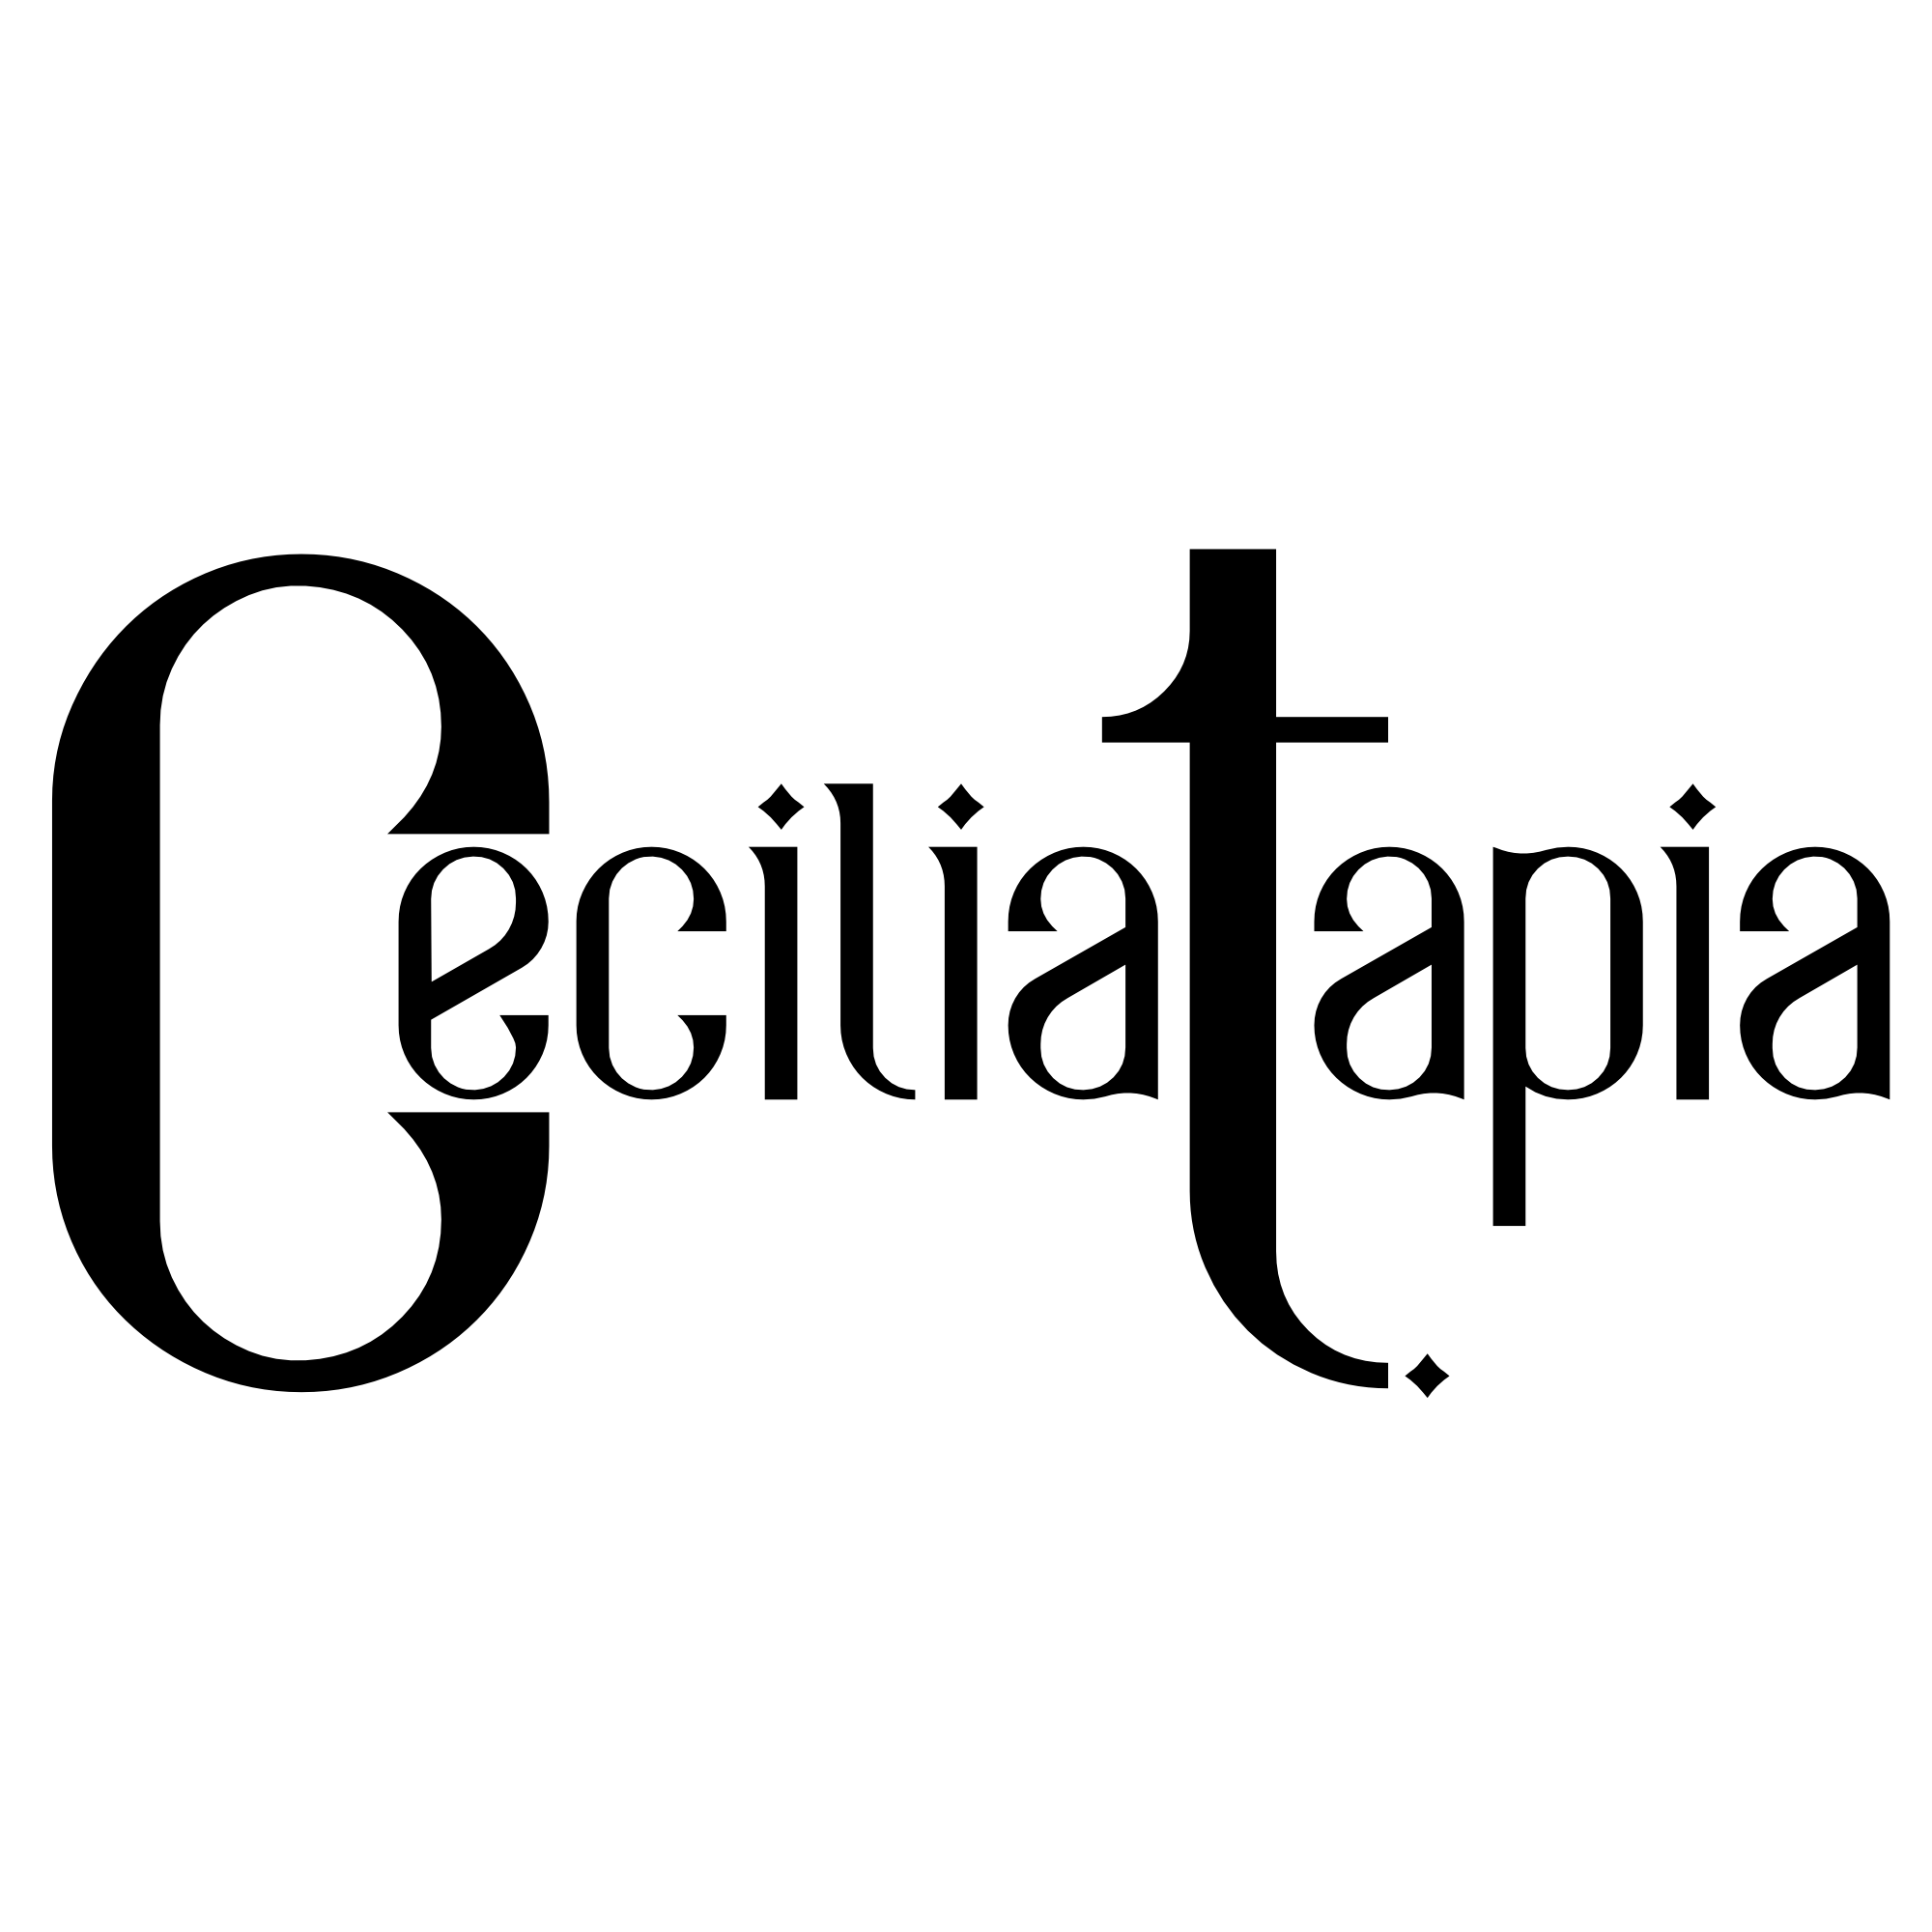 Cecilia Tapia Image Consultant